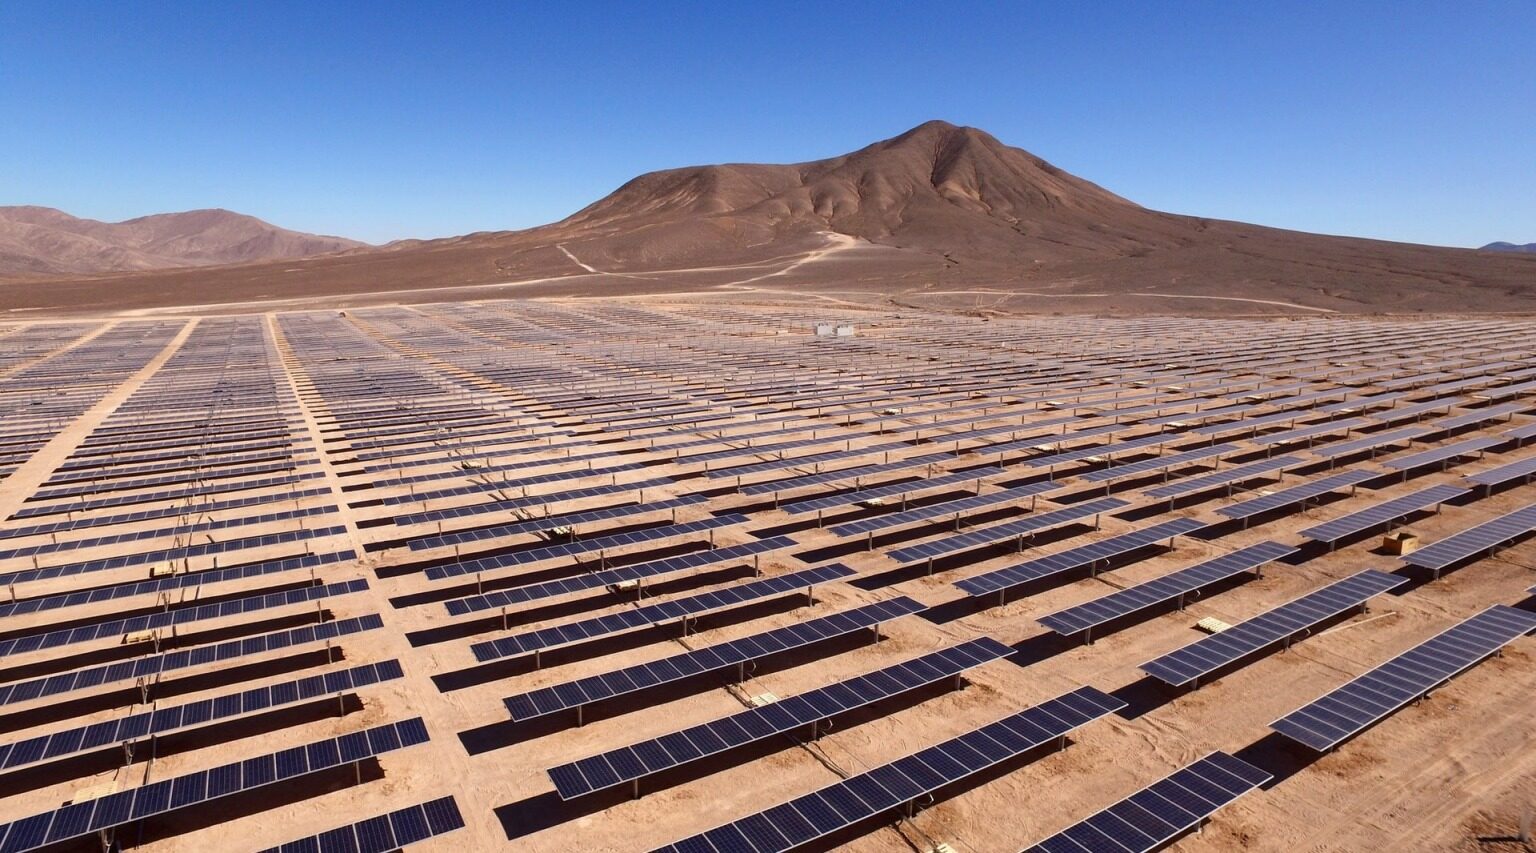 8平方公里的土地上开发,据称是沙特阿拉伯最大的太阳能光伏电站,也是